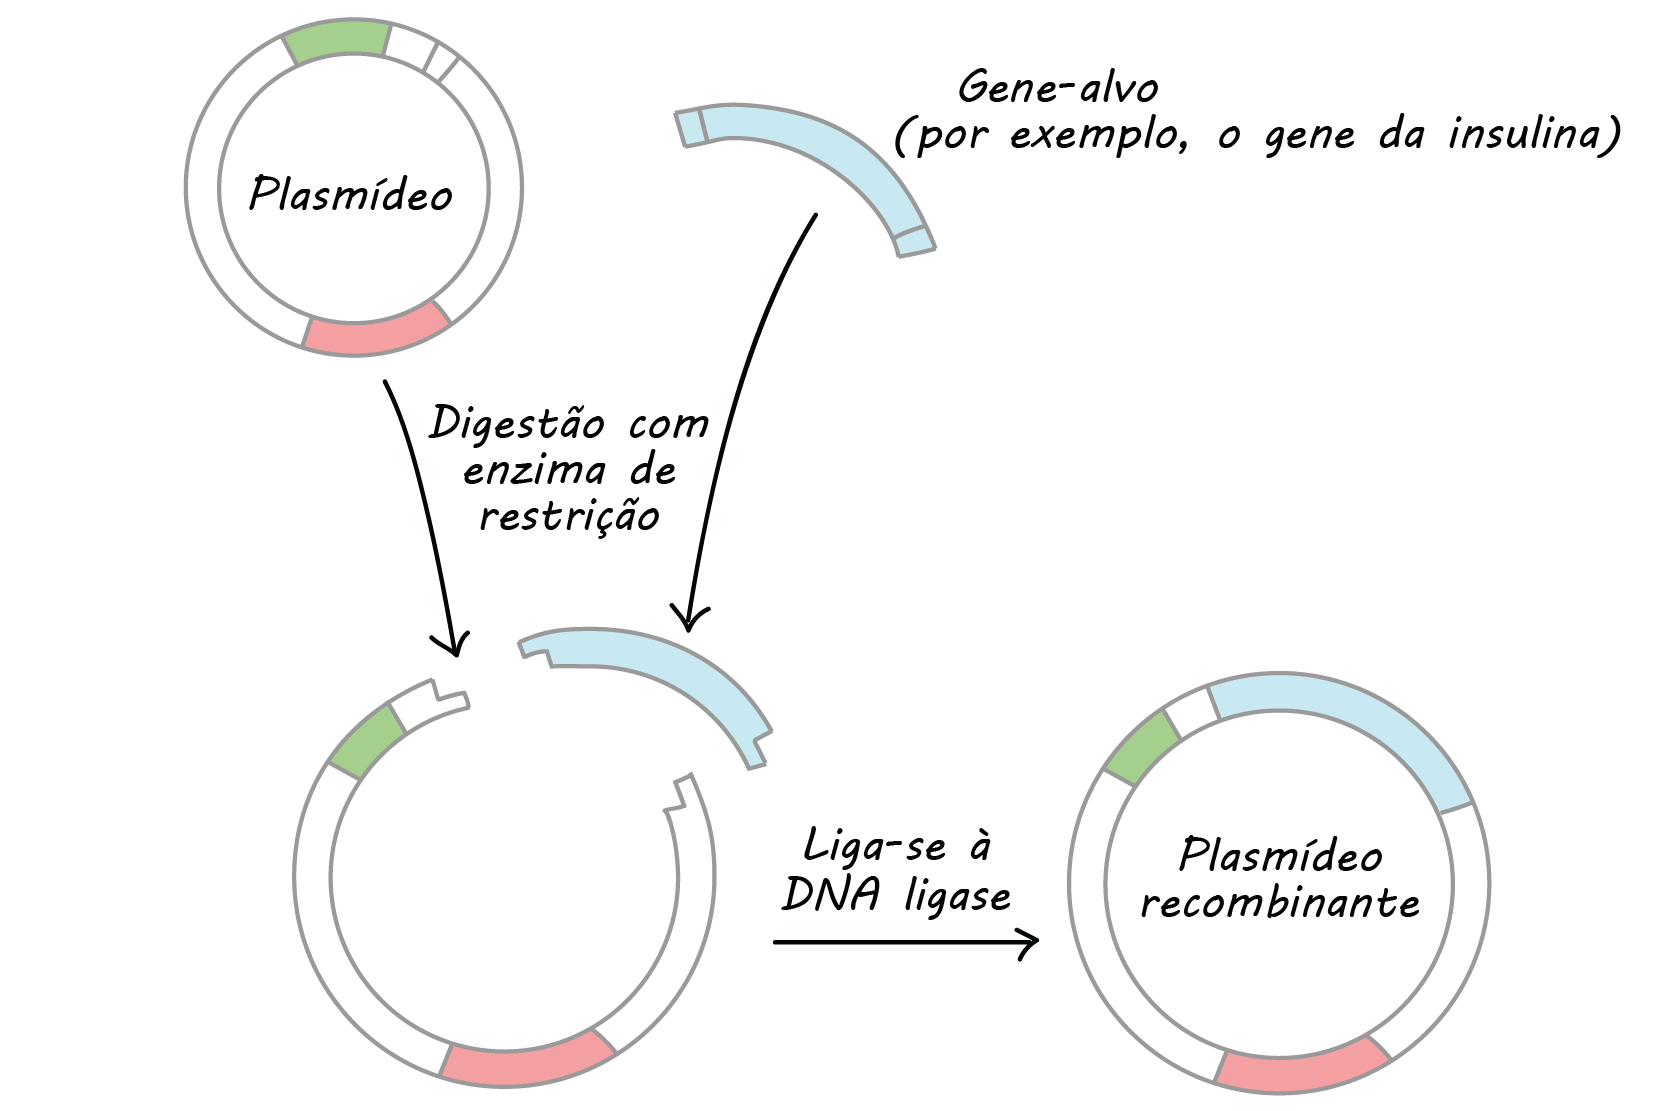 Diagrama mostrando a digestão da restrição e a ligação num esquema simplificado.

Começamos com um plasmídeo bacteriano circular e um gene alvo. Nas duas extremidades do gene alvo estão os sítios de restrição, ou sequências de DNA reconhecidas por uma enzima de restrição particular. No plasmídeo, também há um sítio de restrição reconhecido pela mesma enzima, logo após um promotor que vai conduzir a expressão nas bactérias

Tanto o plasmídeo e o gene alvo (separadamente) são digeridos com a enzima de restrição. Os fragmentos são purificados e combinados. Eles têm "extremidades", ou saliências de DNA de fita simples, correspondentes, assim eles podem ficar juntos.

A enzima DNA ligase une os fragmentos com extremidades correspondentes para formar uma única molécula de DNA íntegra. Isto produz um plasmídeo recombinante que contém o gene alvo.